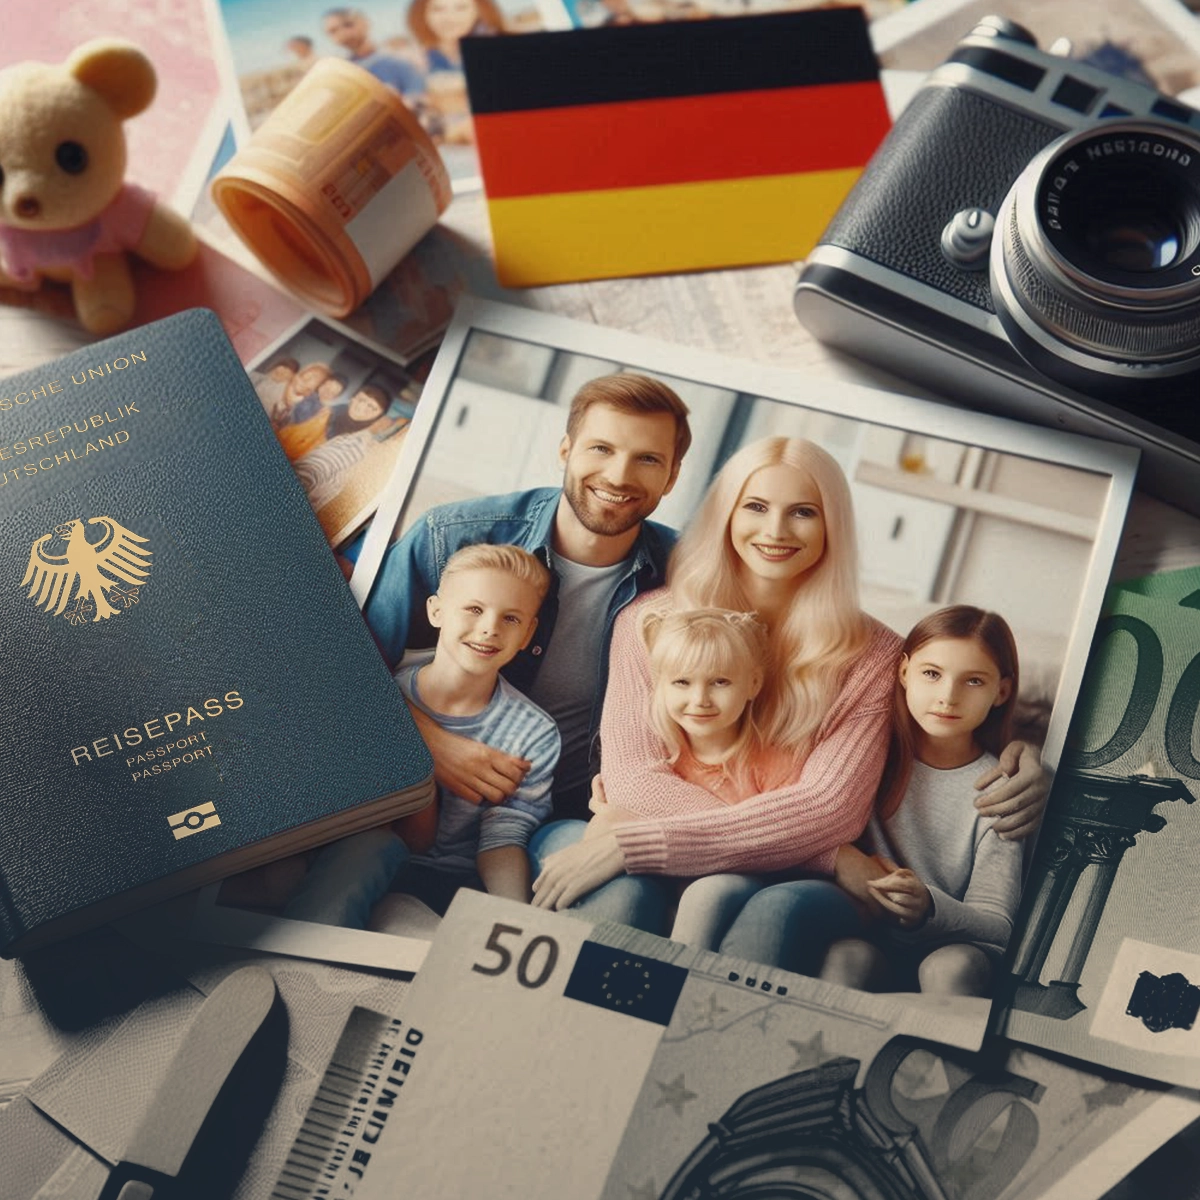 ویزای پیوستن همسر و فرزند به خانواده در آلمان